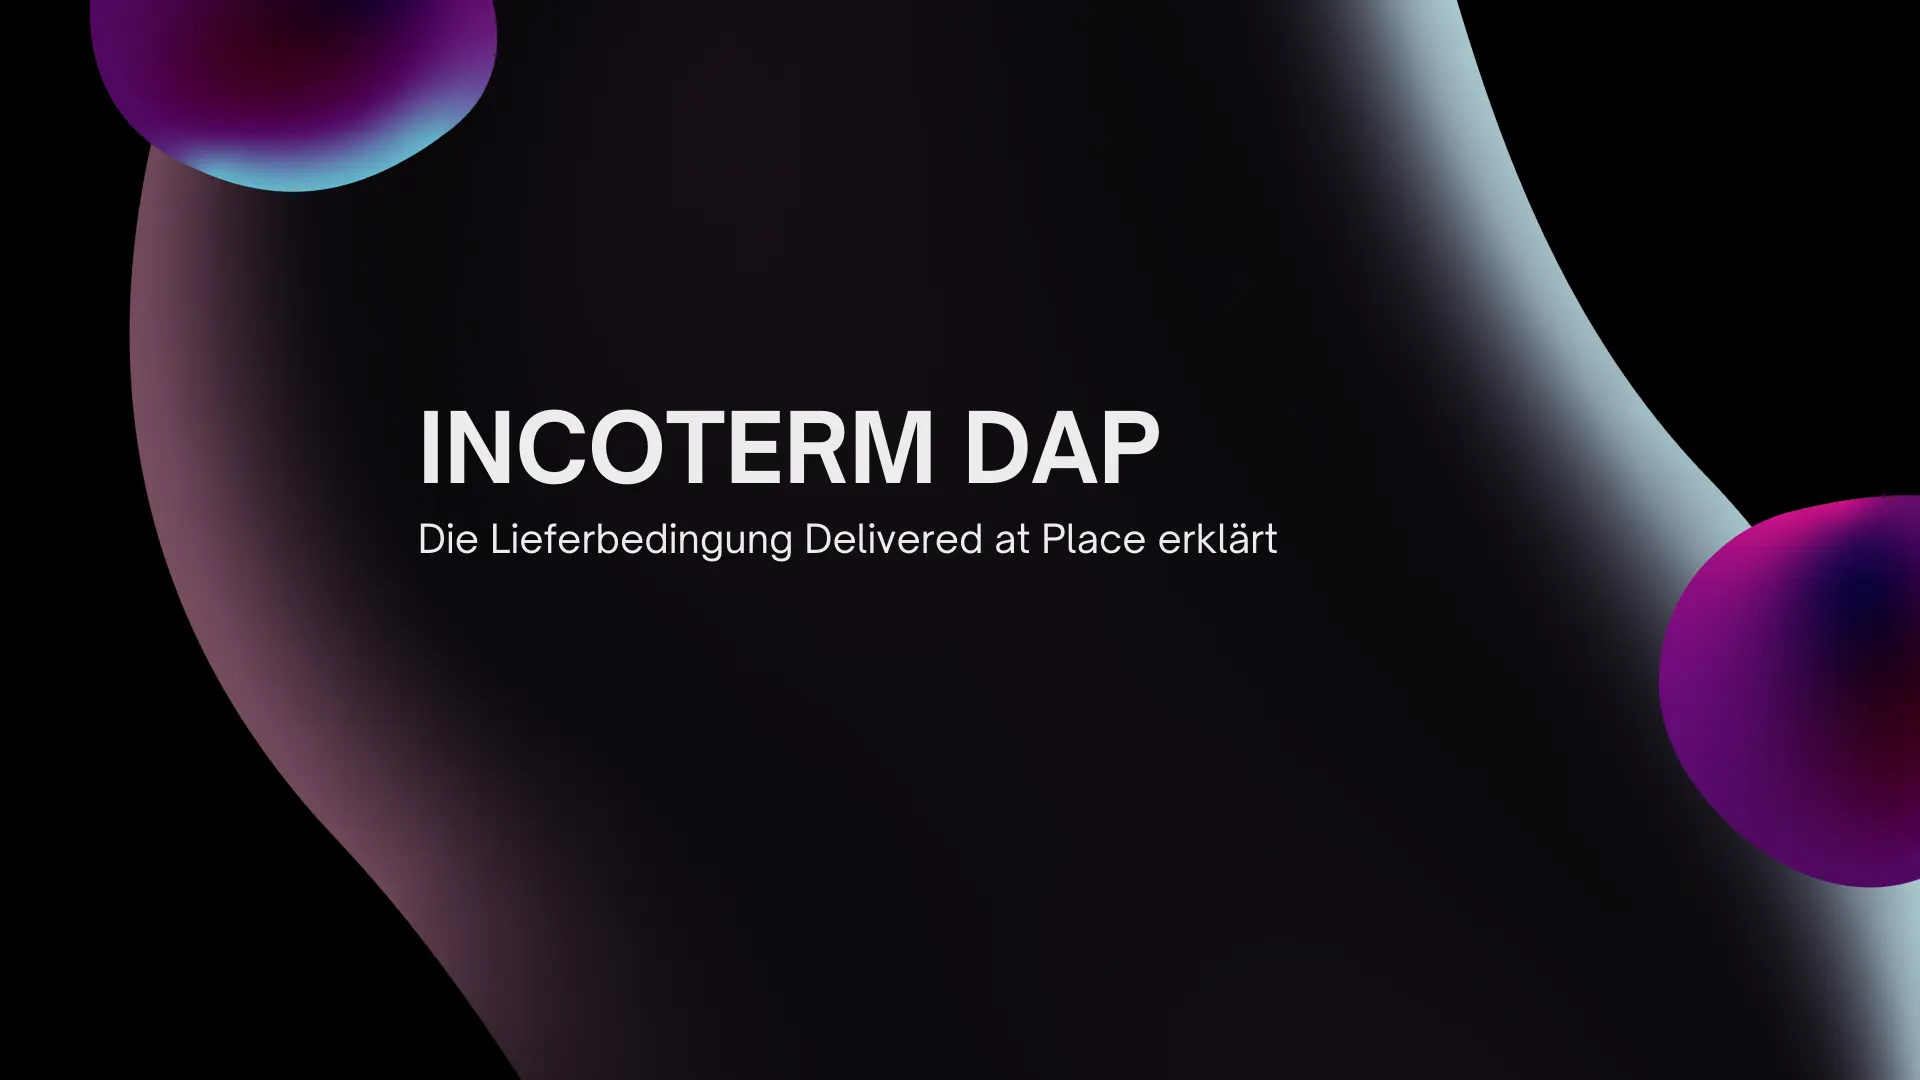 Incoterm DAP – Eine umfassende Analyse der Lieferbedingung Delivered At Place